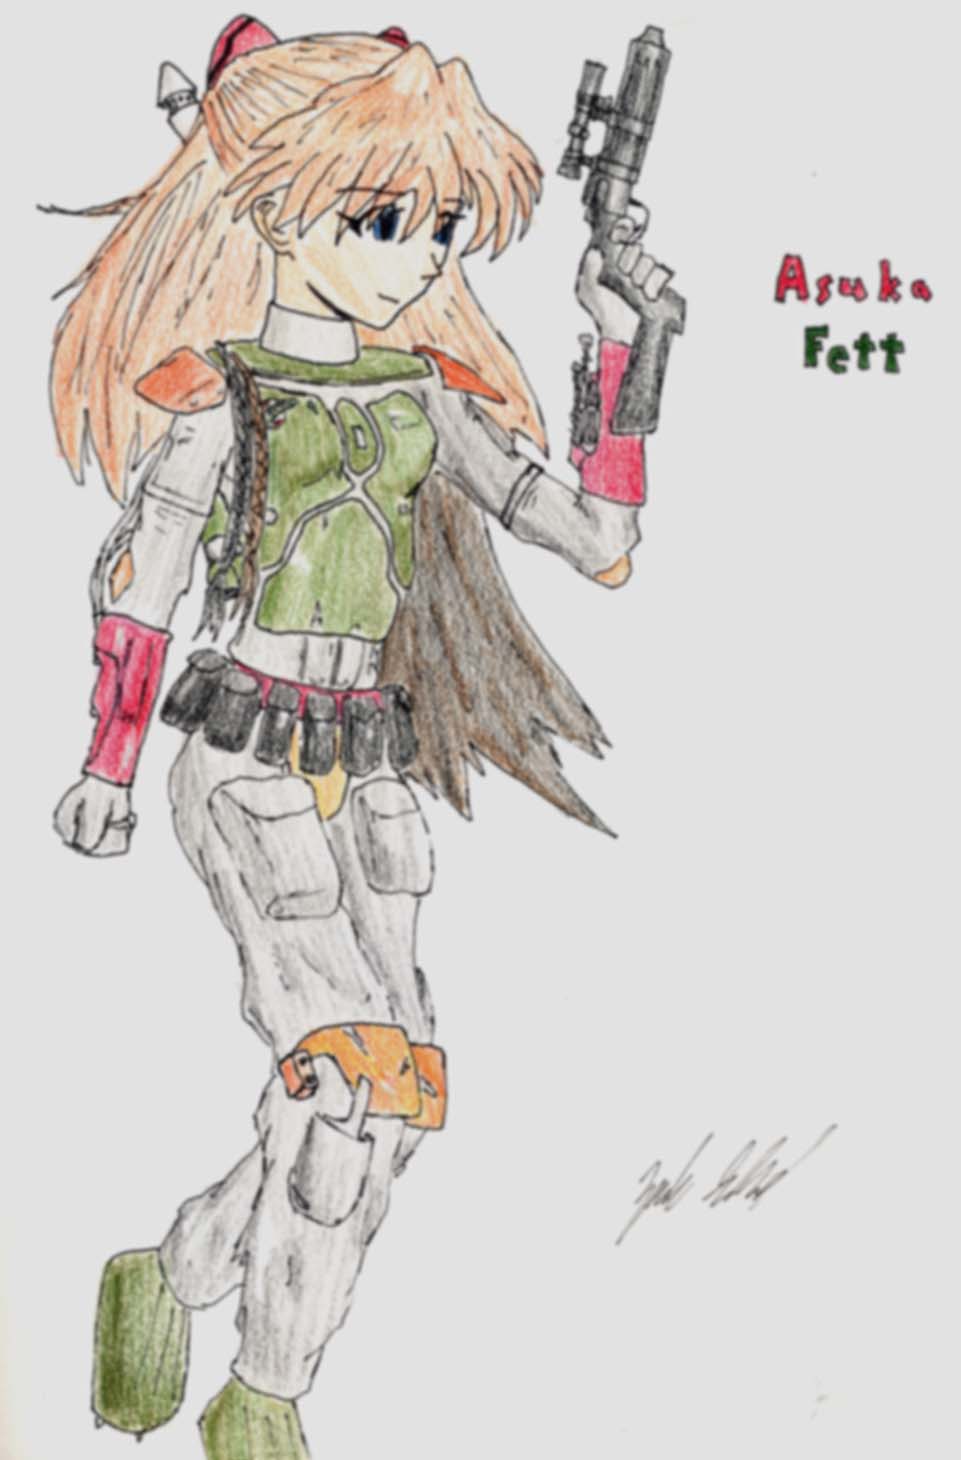 Asuka Fett by Kupo-the-Avenger